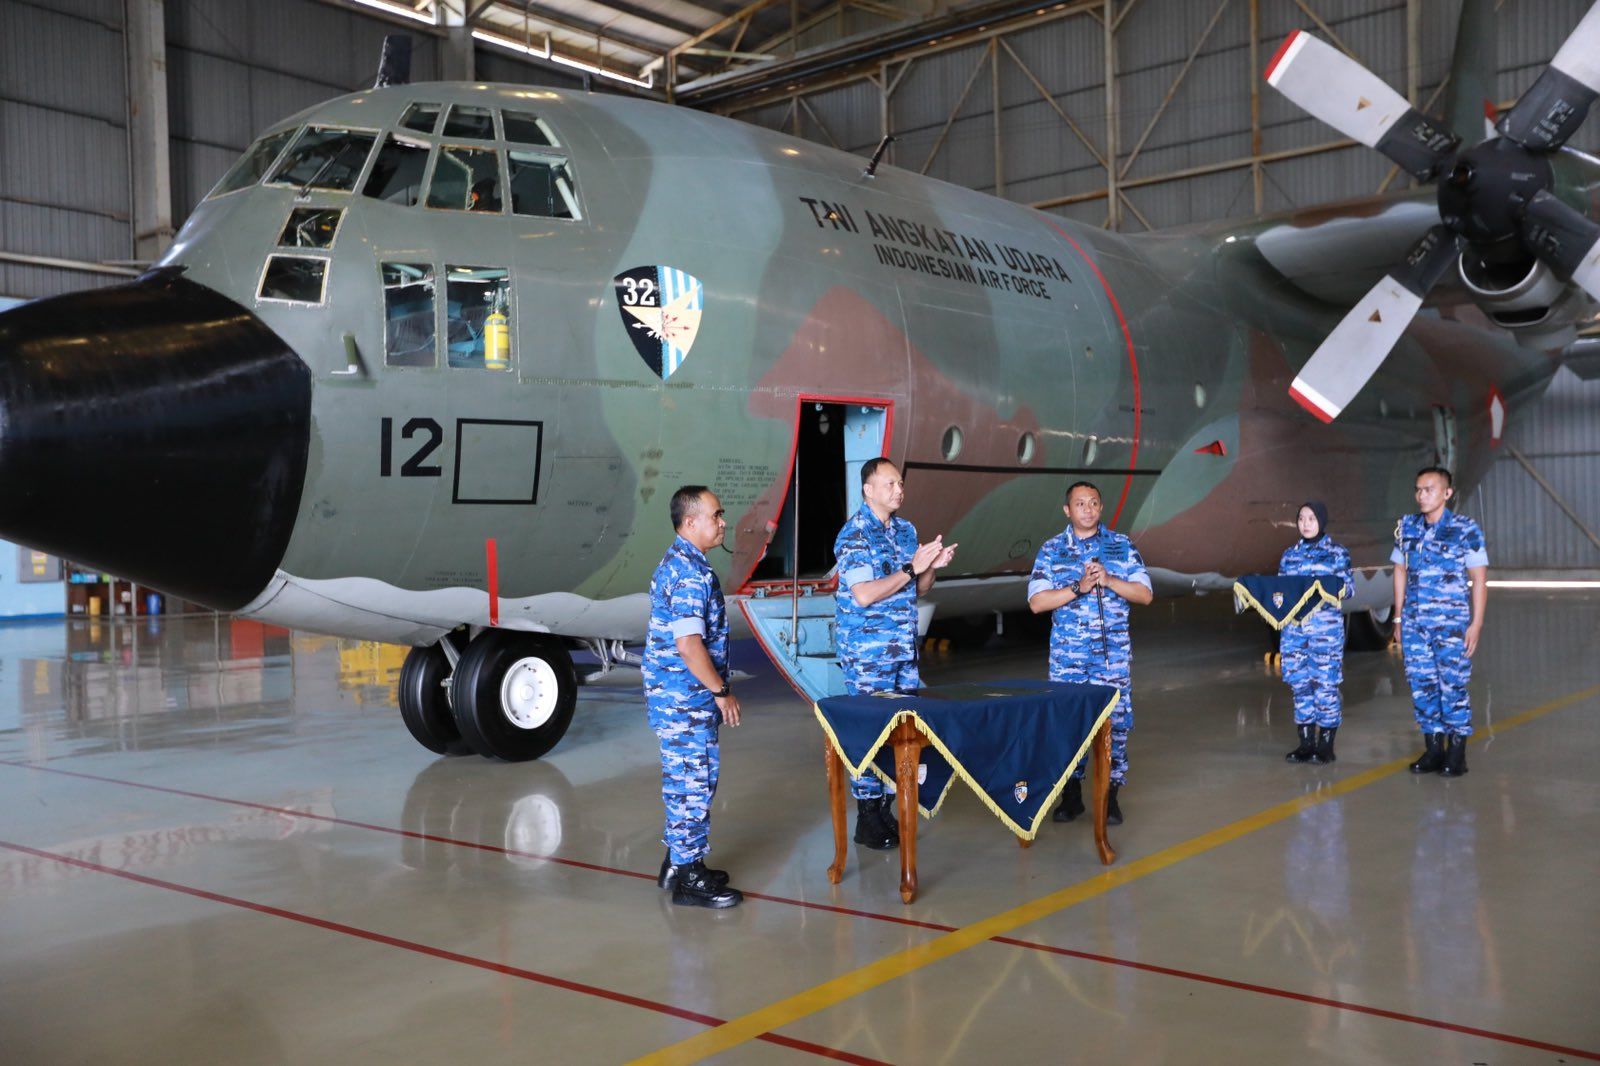 Indonesia Receives first C-130J-30 Super Hercules